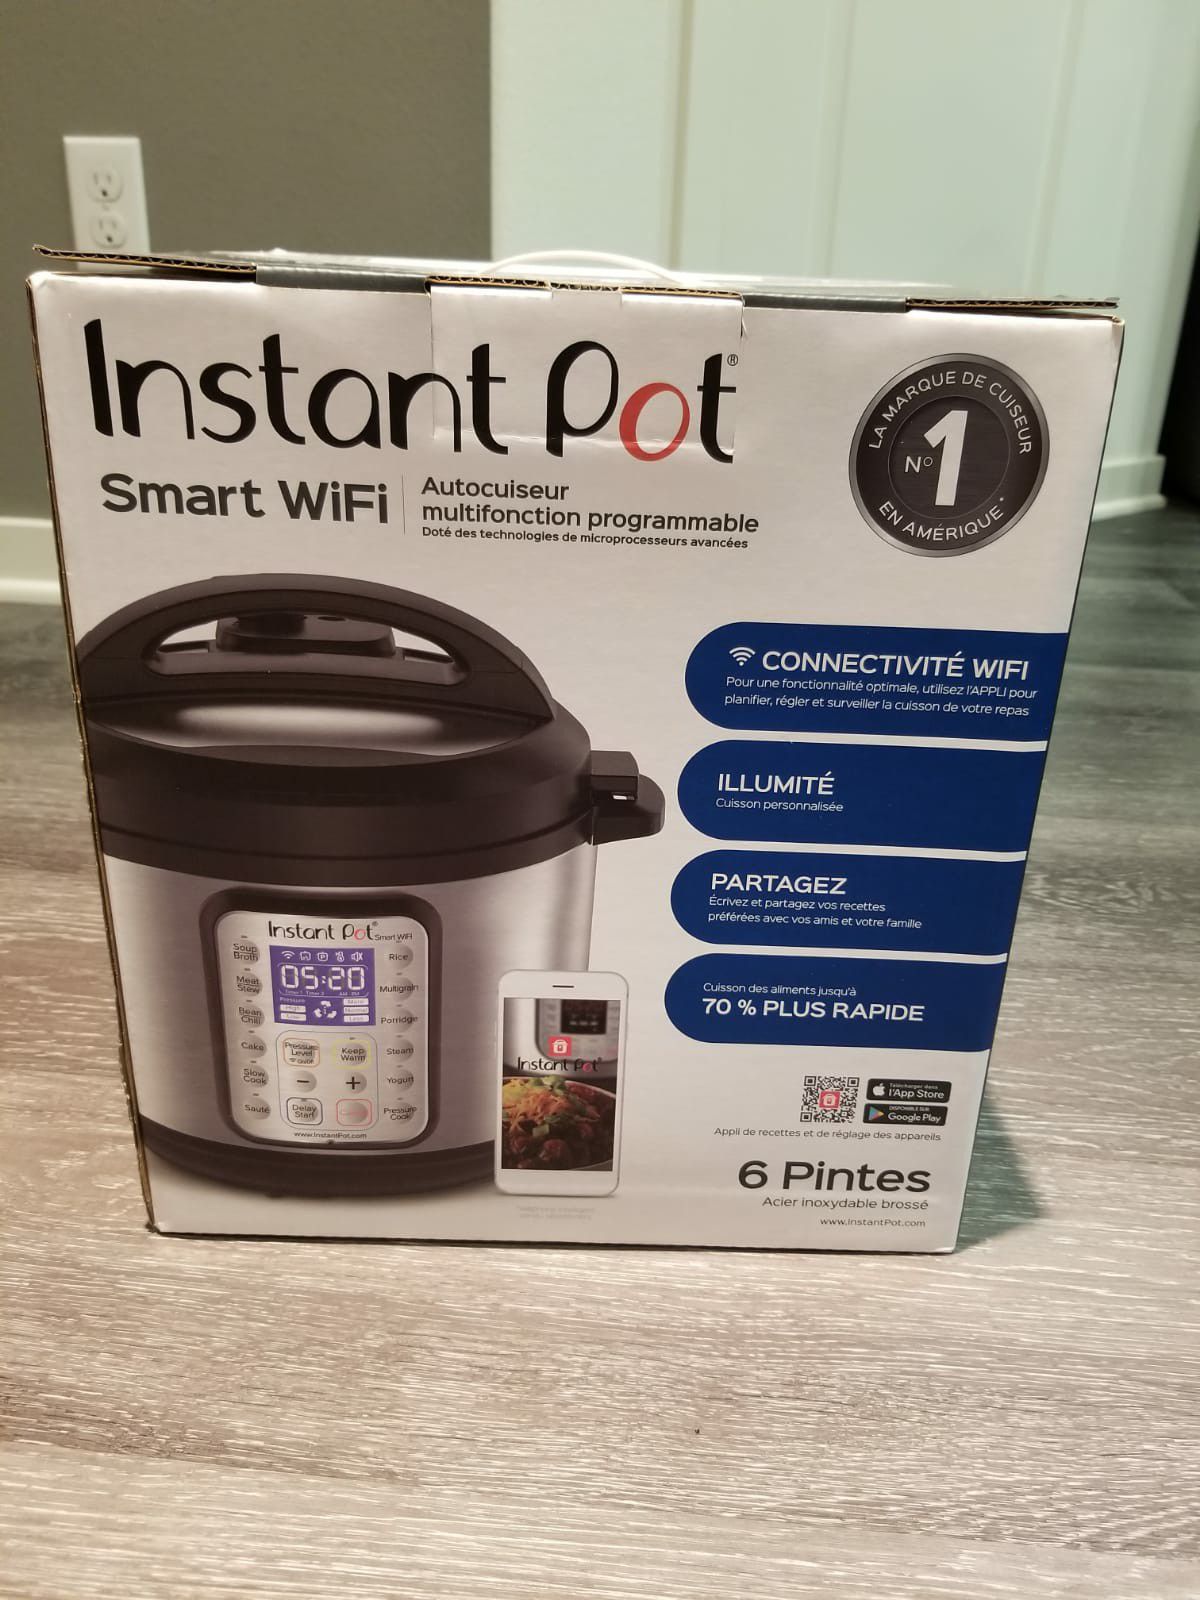 Instant pot smart wifi 6 quart pressure cooker